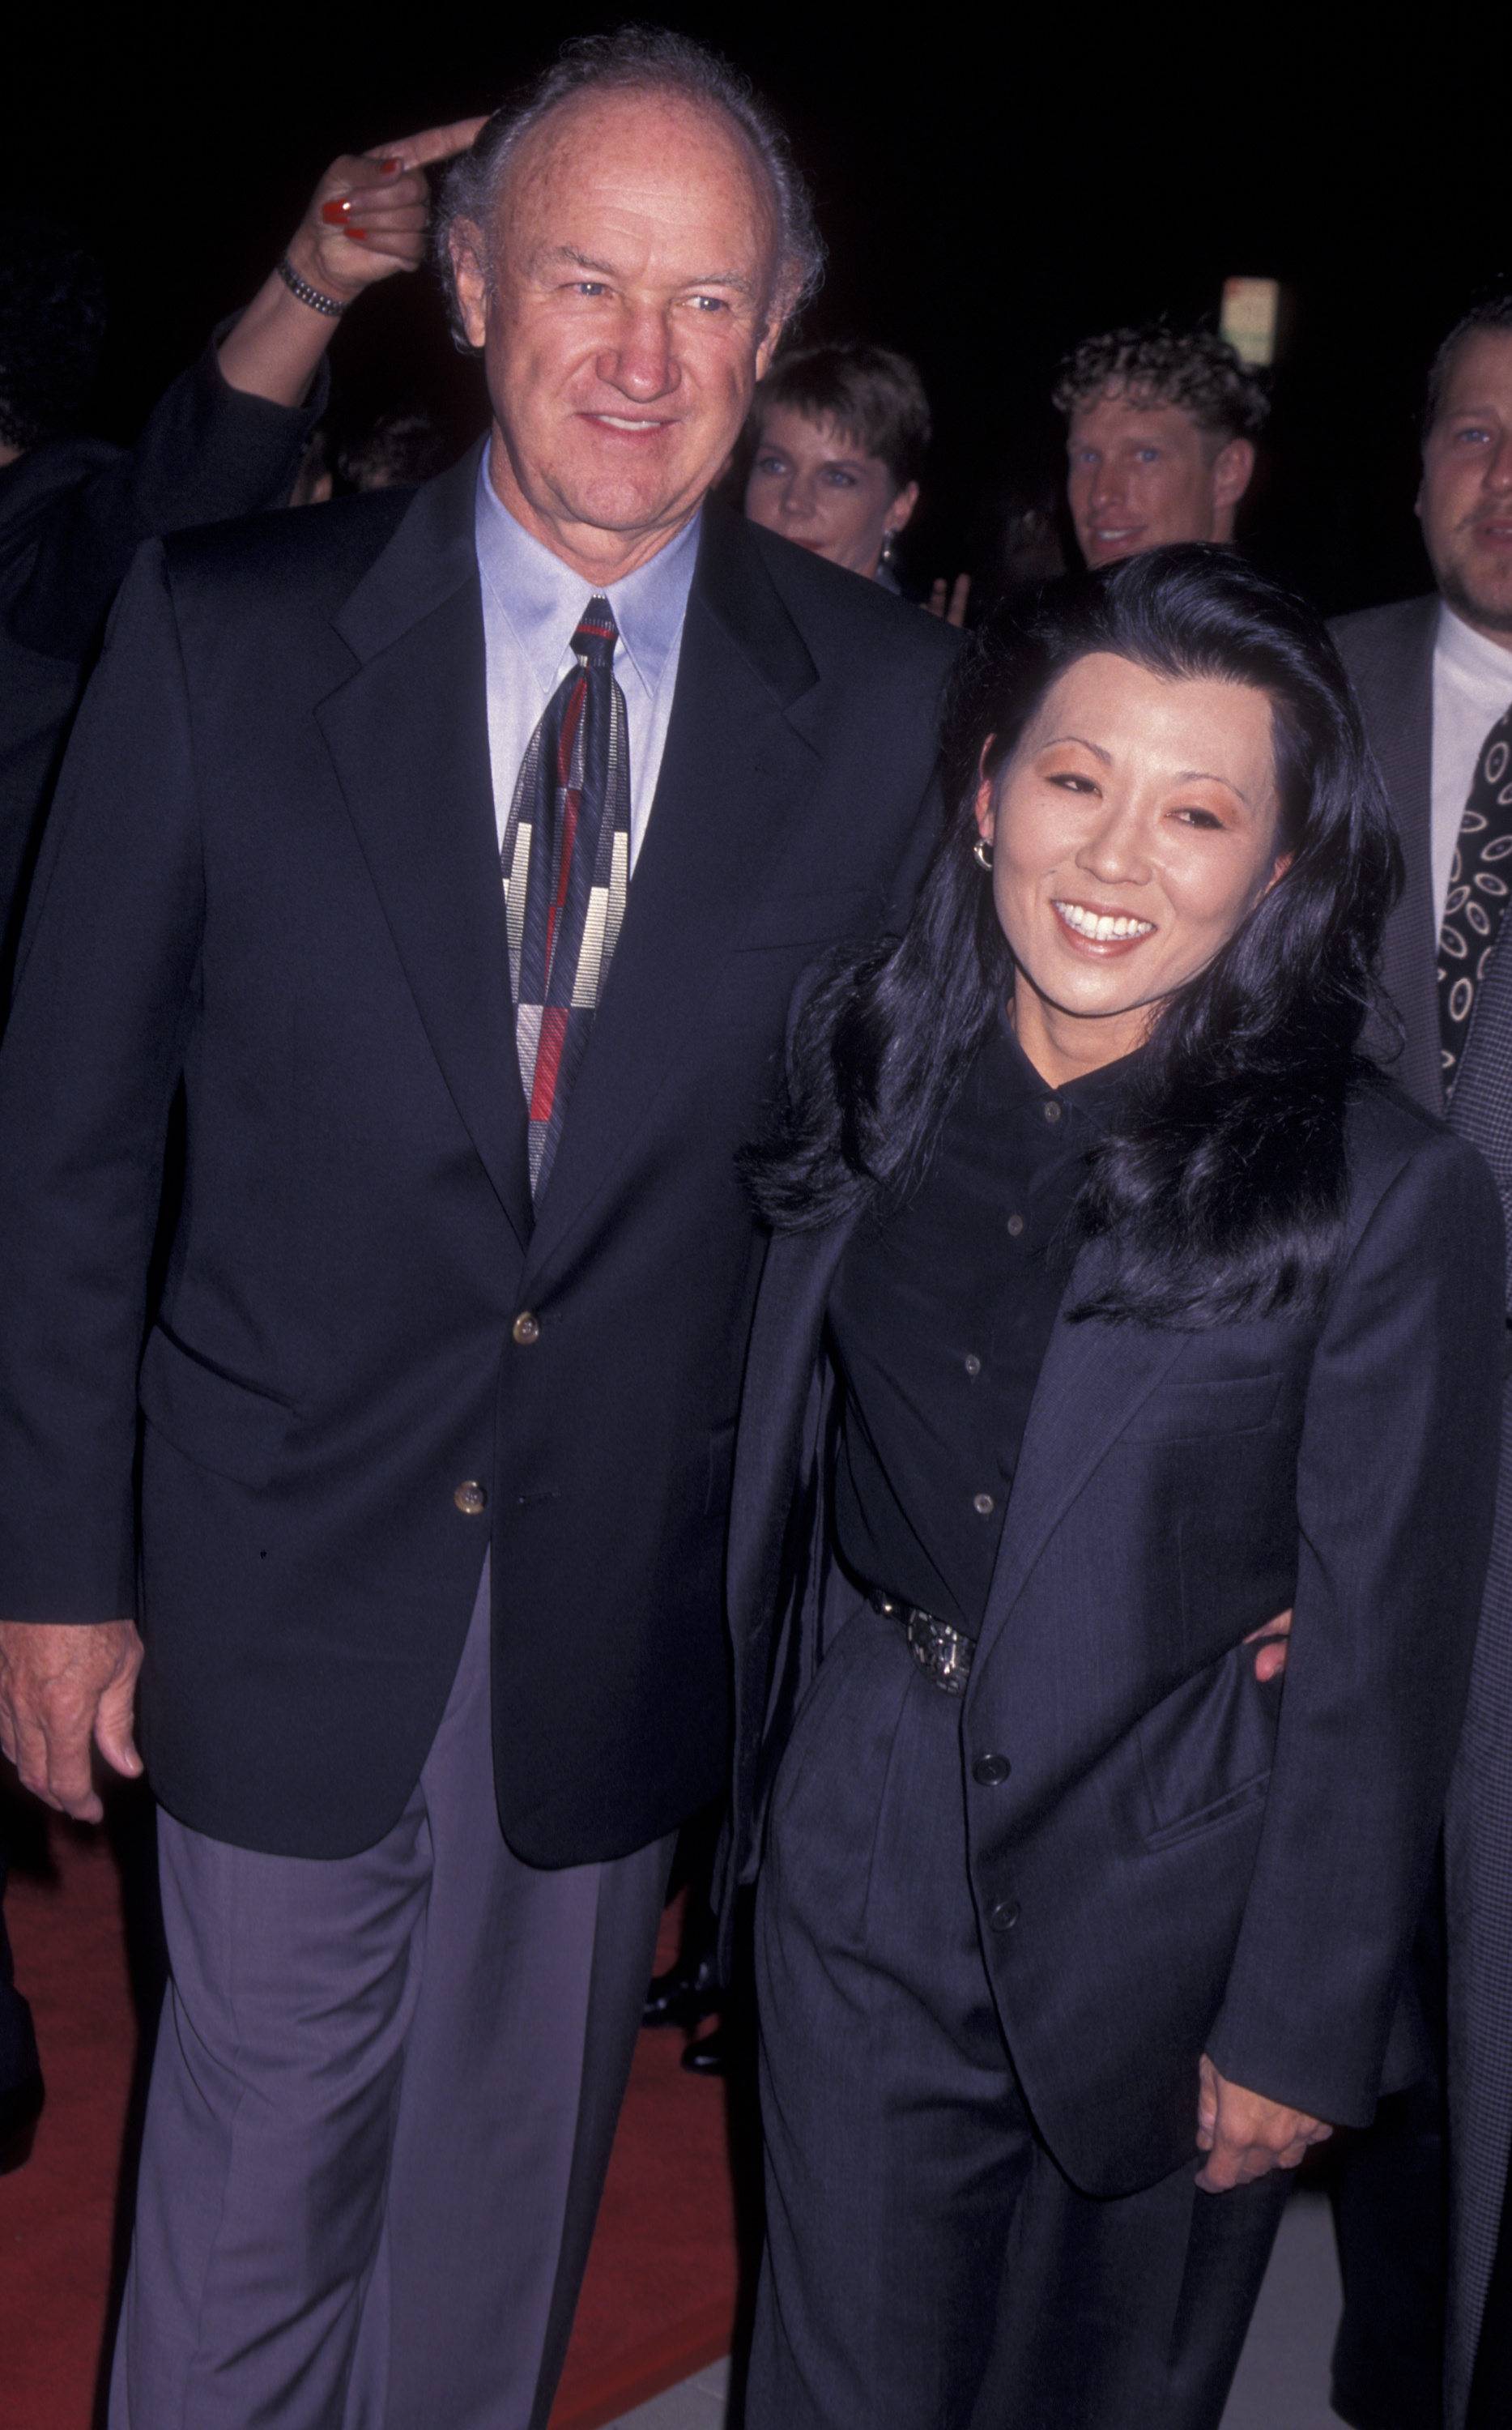 El actor Gene Hackman y su esposa Betsy Hackman asisten al estreno de "The Chamber" el 2 de octubre de 1996, en el Academy Theater de Beverly Hills, California. | Foto: Getty Images